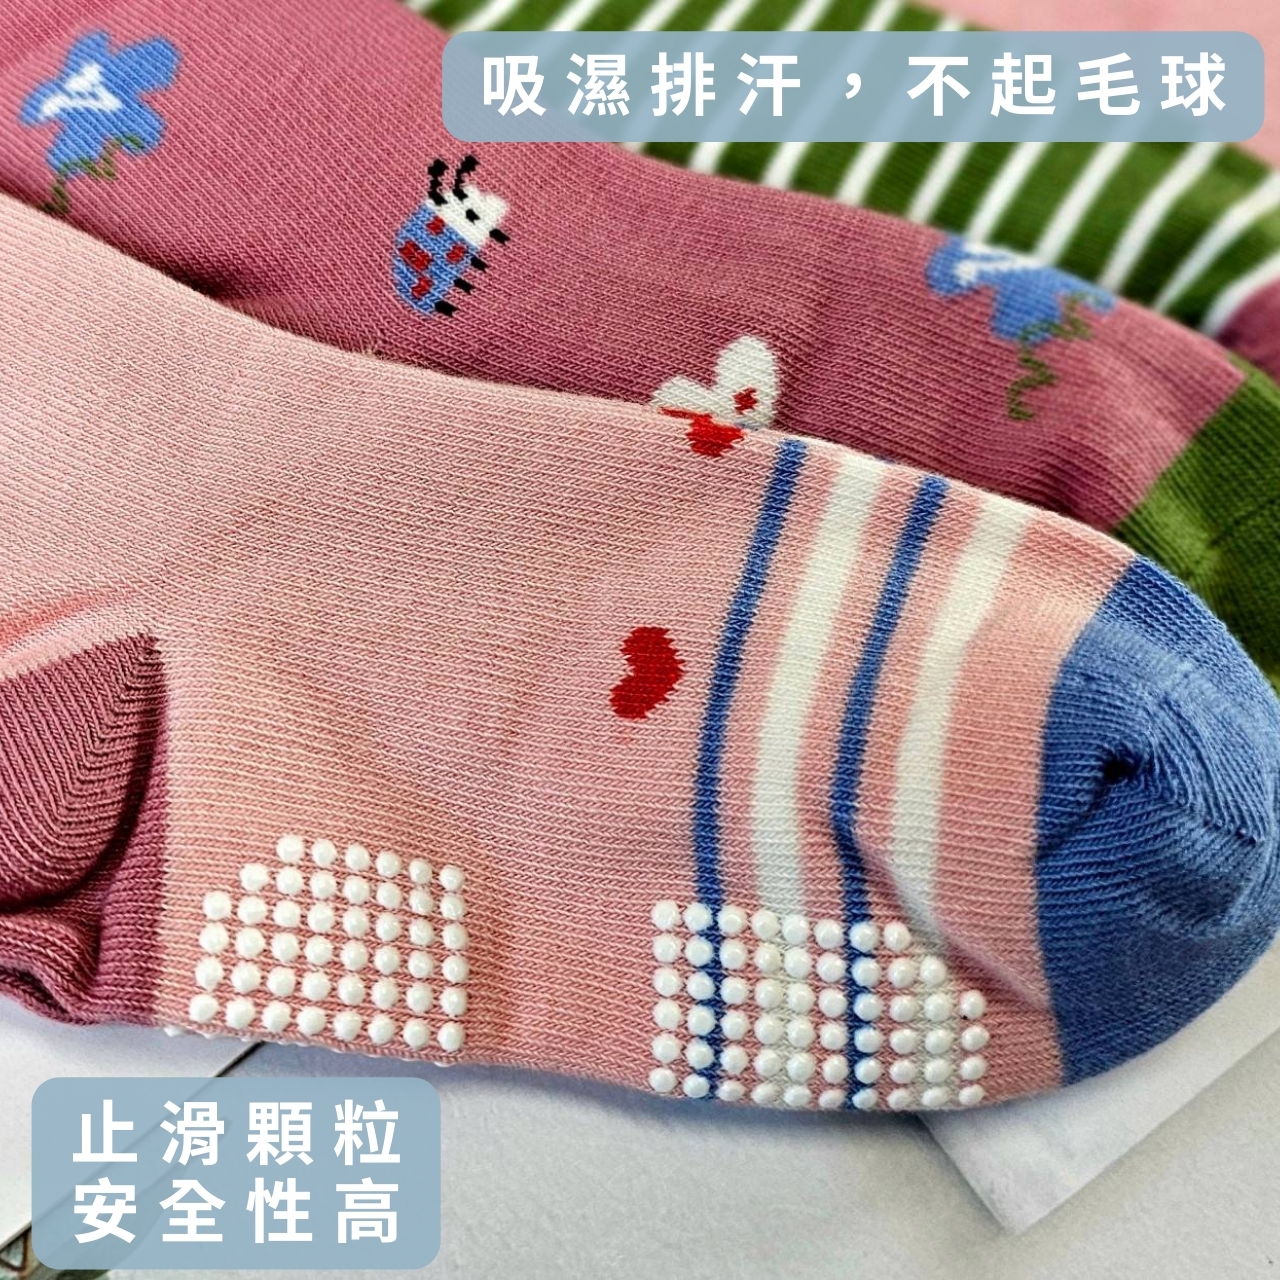 【凱美棉業】MIT台灣製純棉止滑大童襪  獨角獸樂園&兔兔花園款 17-21cm